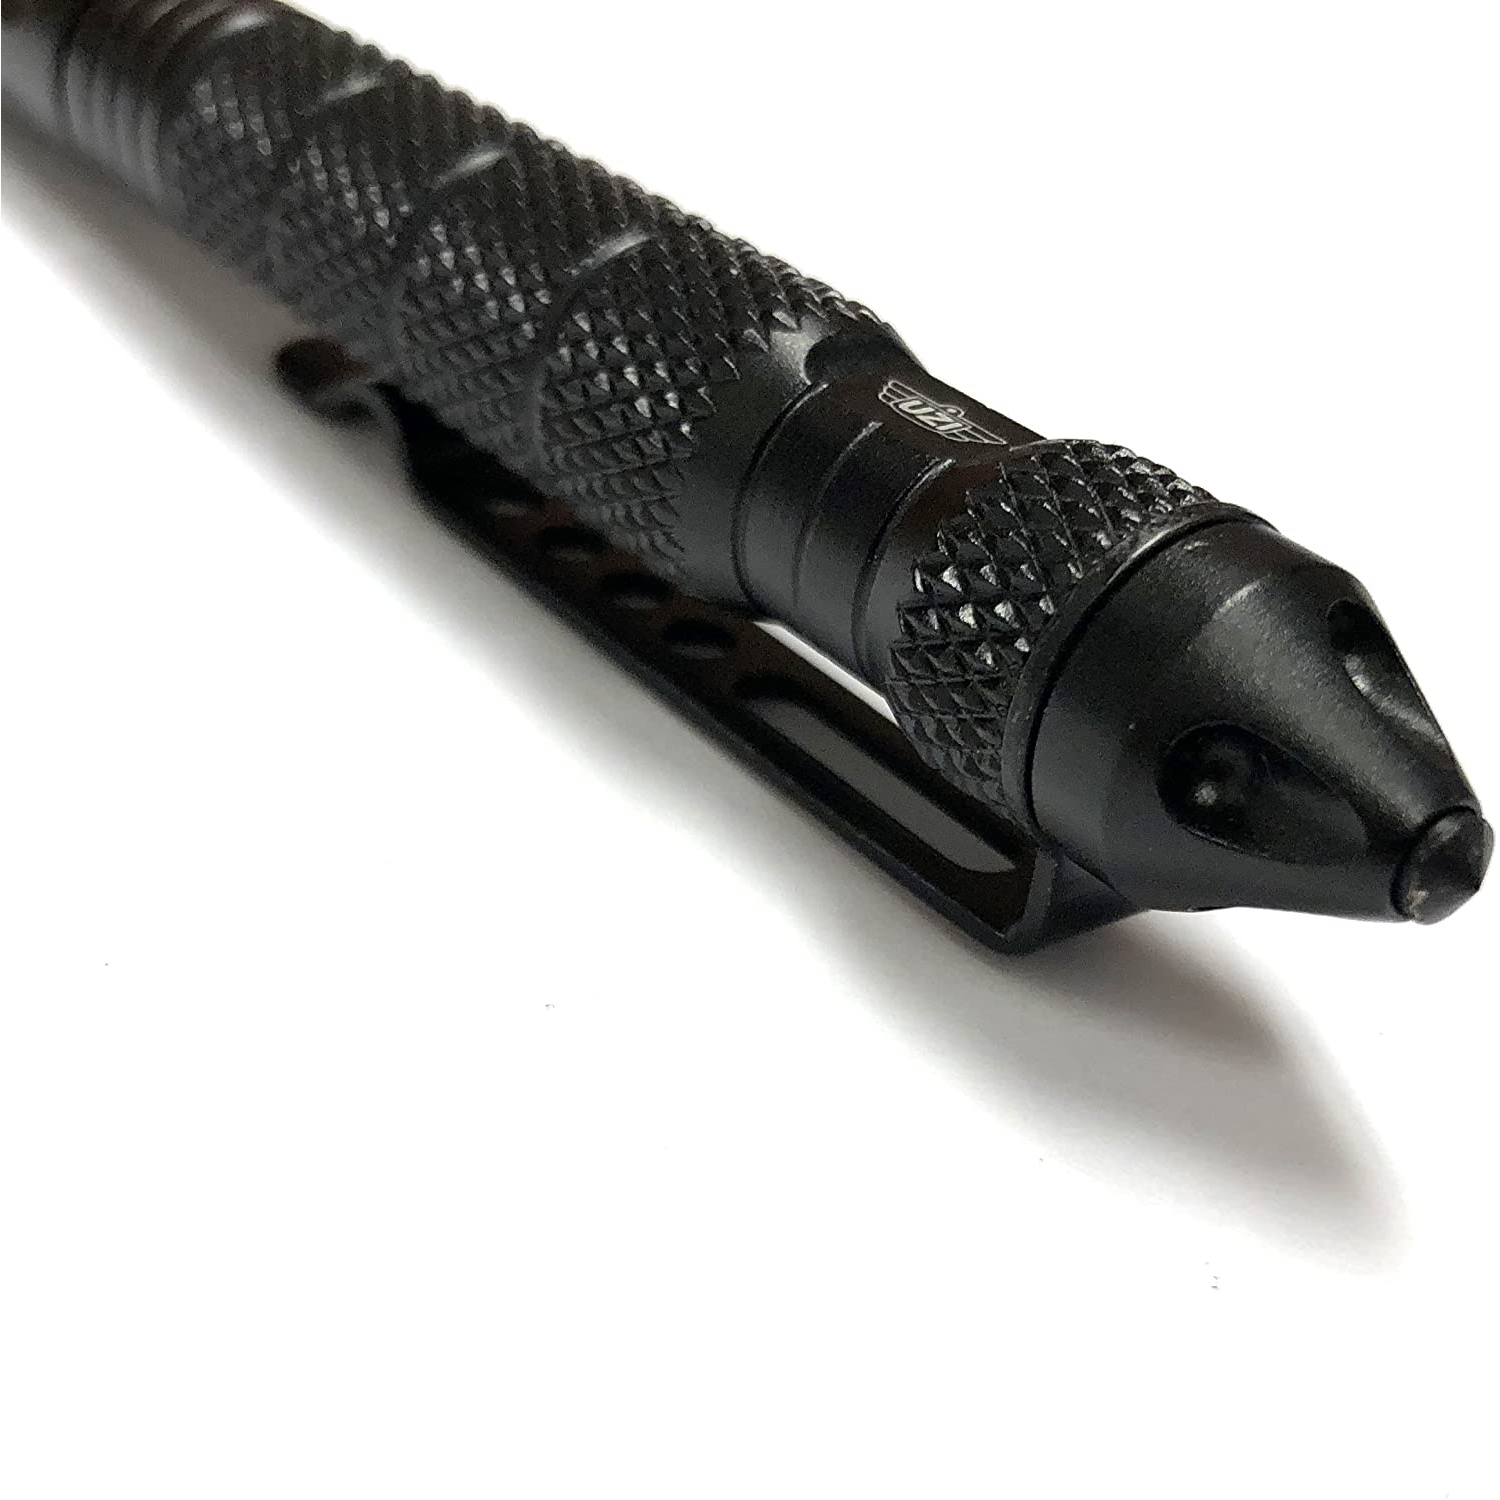 UZI - Tactical Defender Pen 2 - Gun Metal